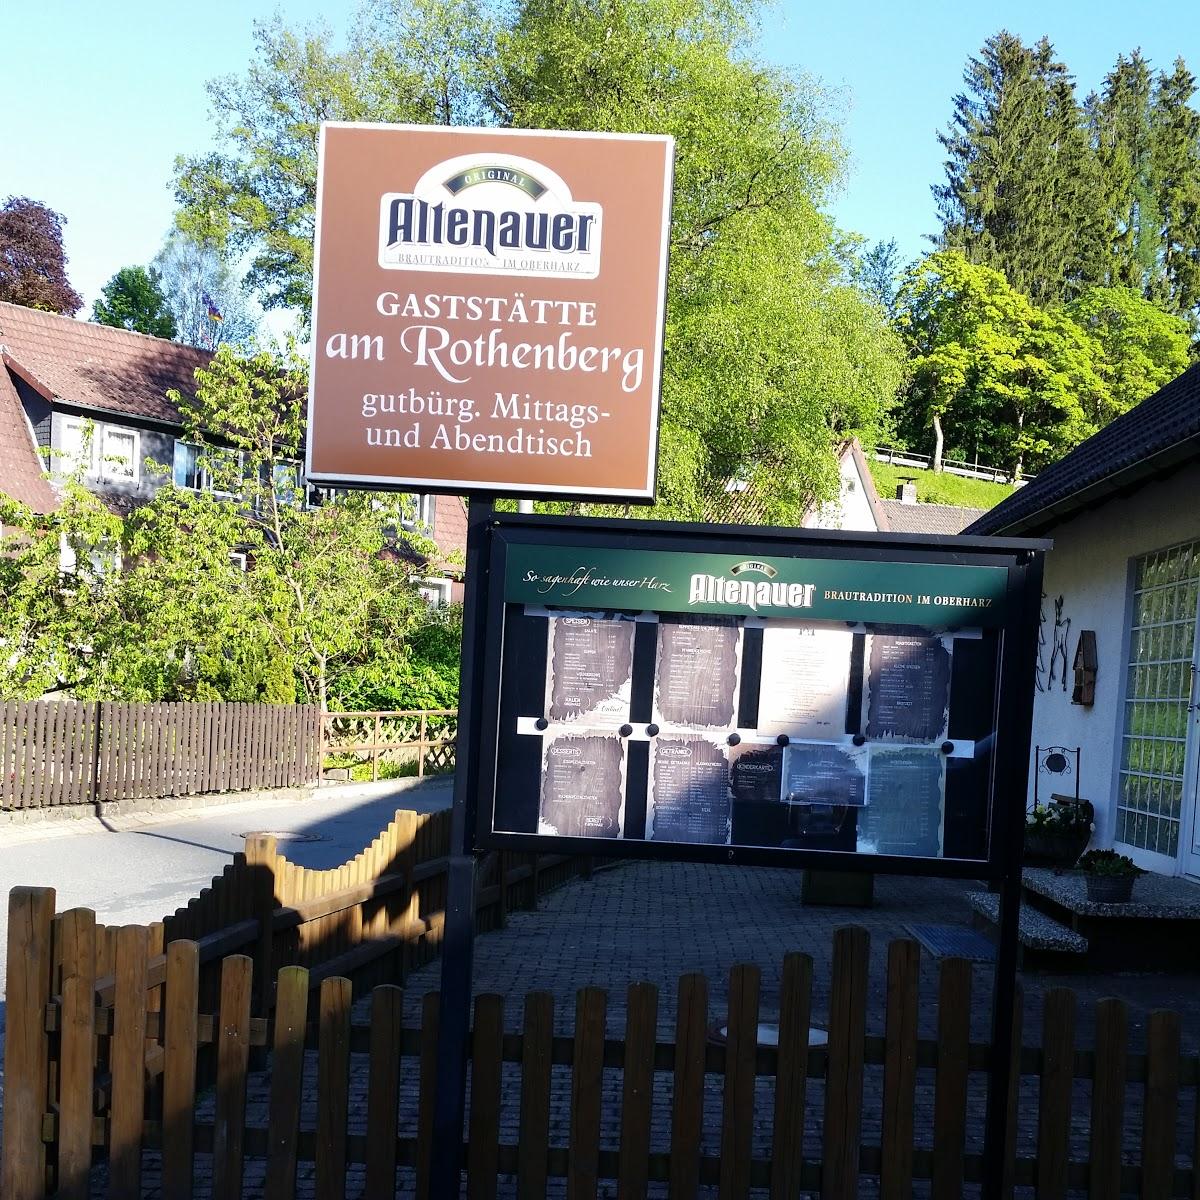 Restaurant "Gaststätte am Rothenberg" in Altenau